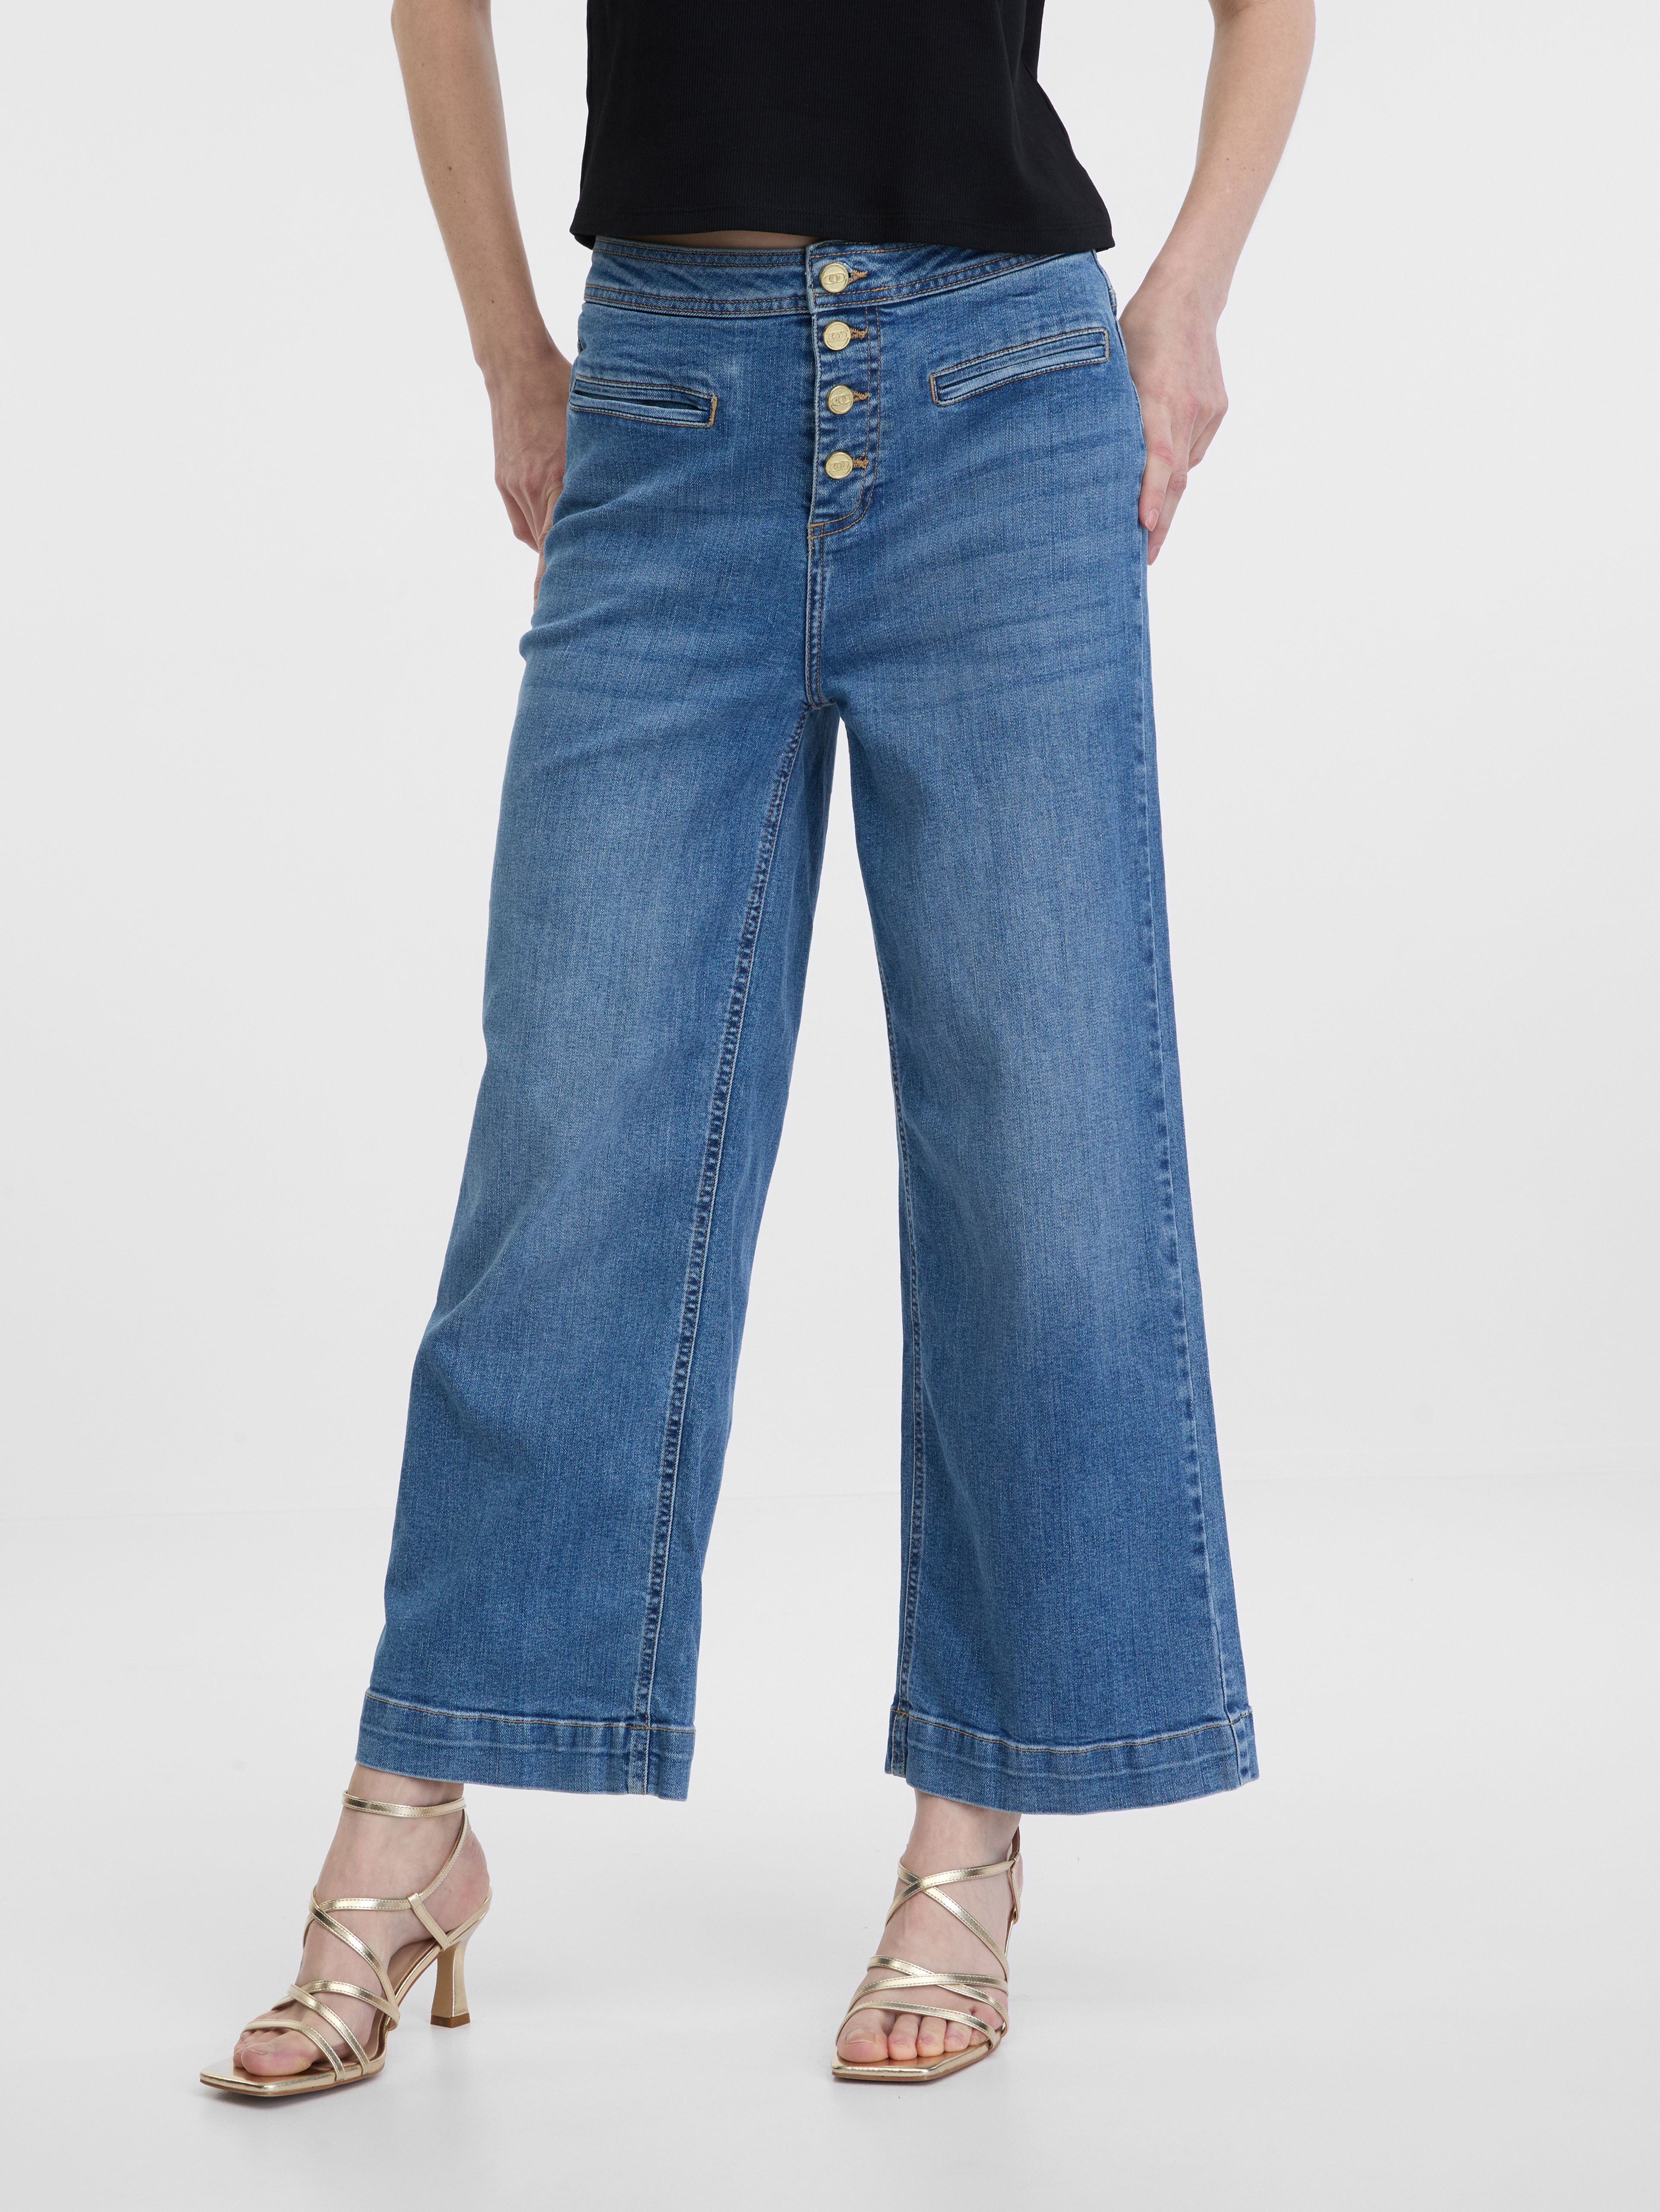 Modré dámské široké džíny ORSAY